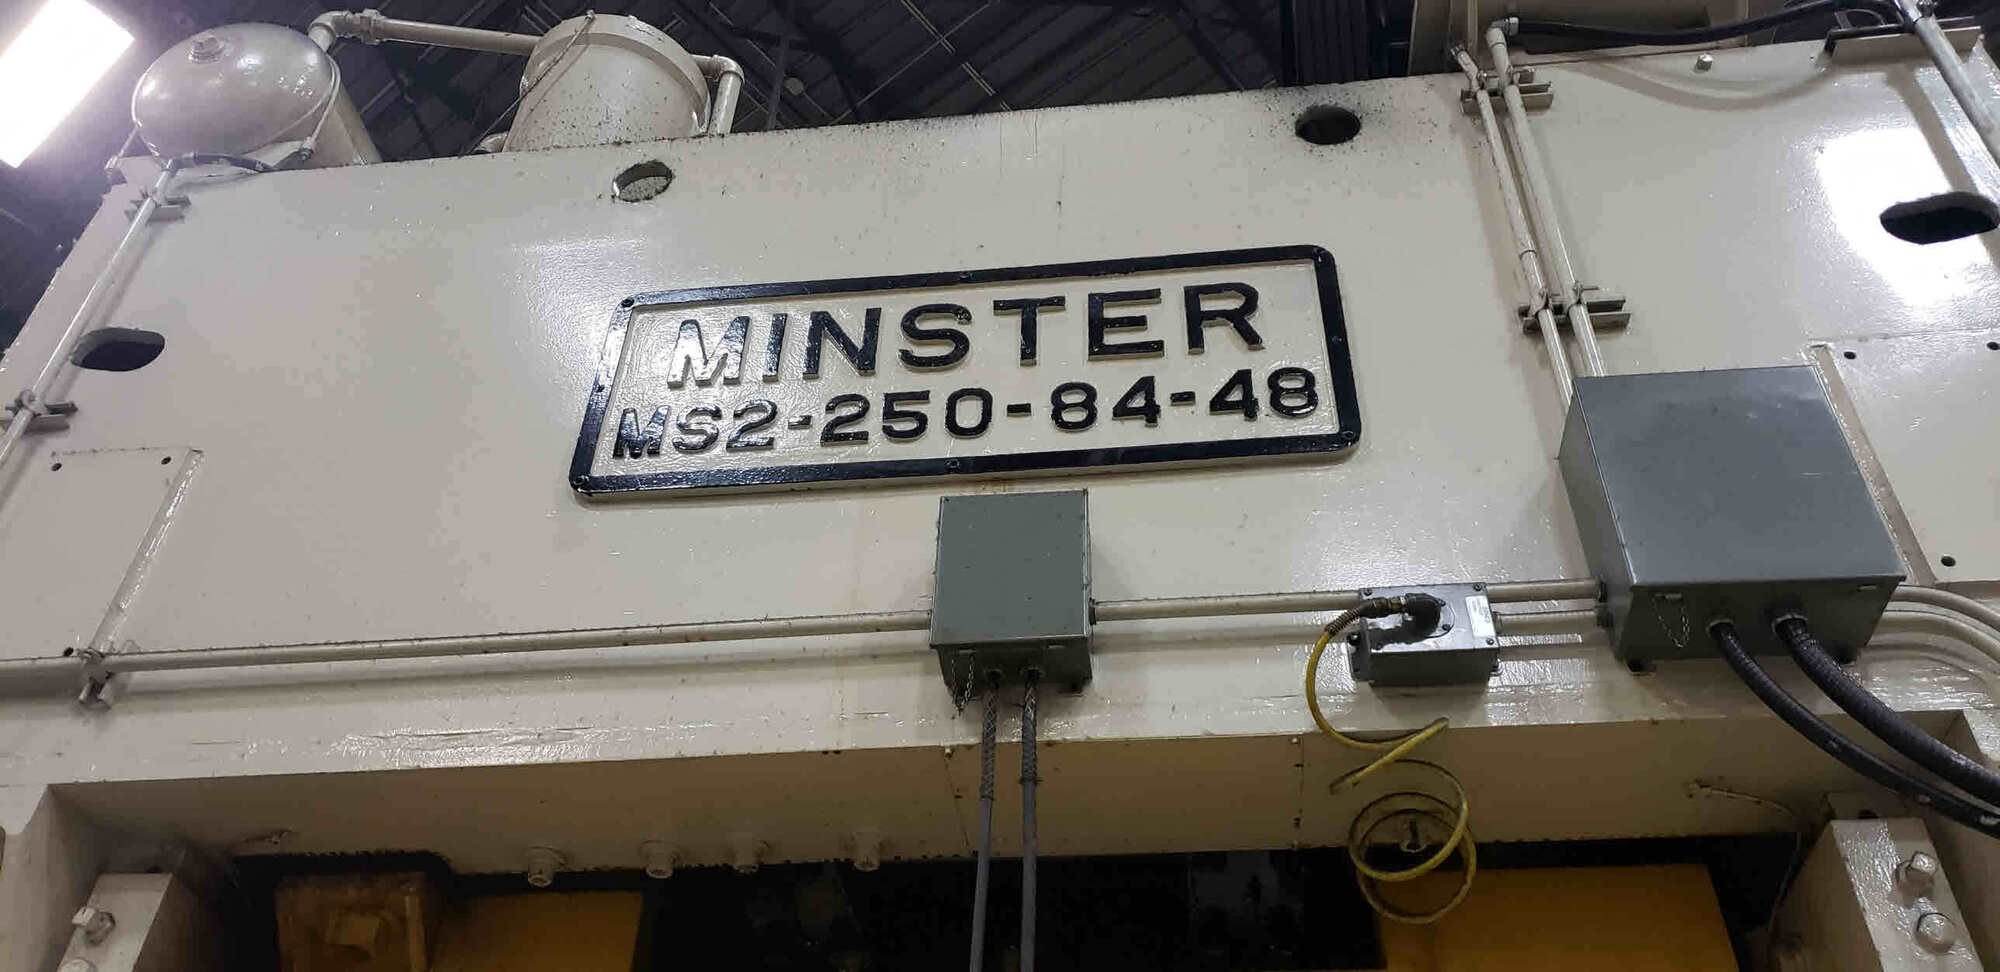 MINSTER MS2-250-84-48 Straight Side Presses | PressTrader Limited